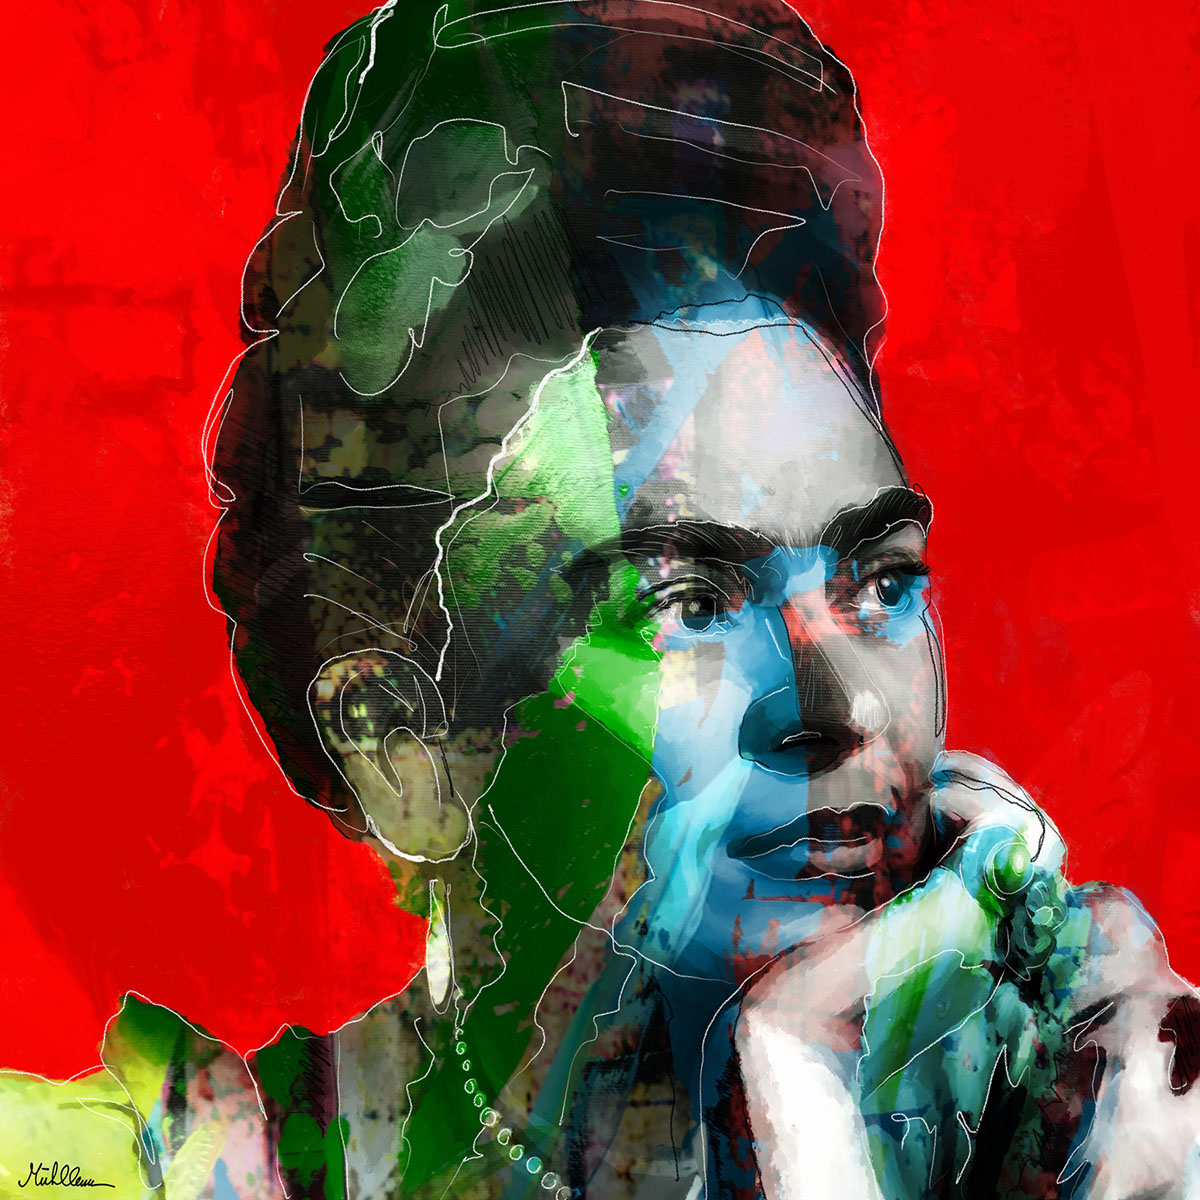 Acryl- und Digitalmalerei von H. Mühlbauer: "Red Frida"